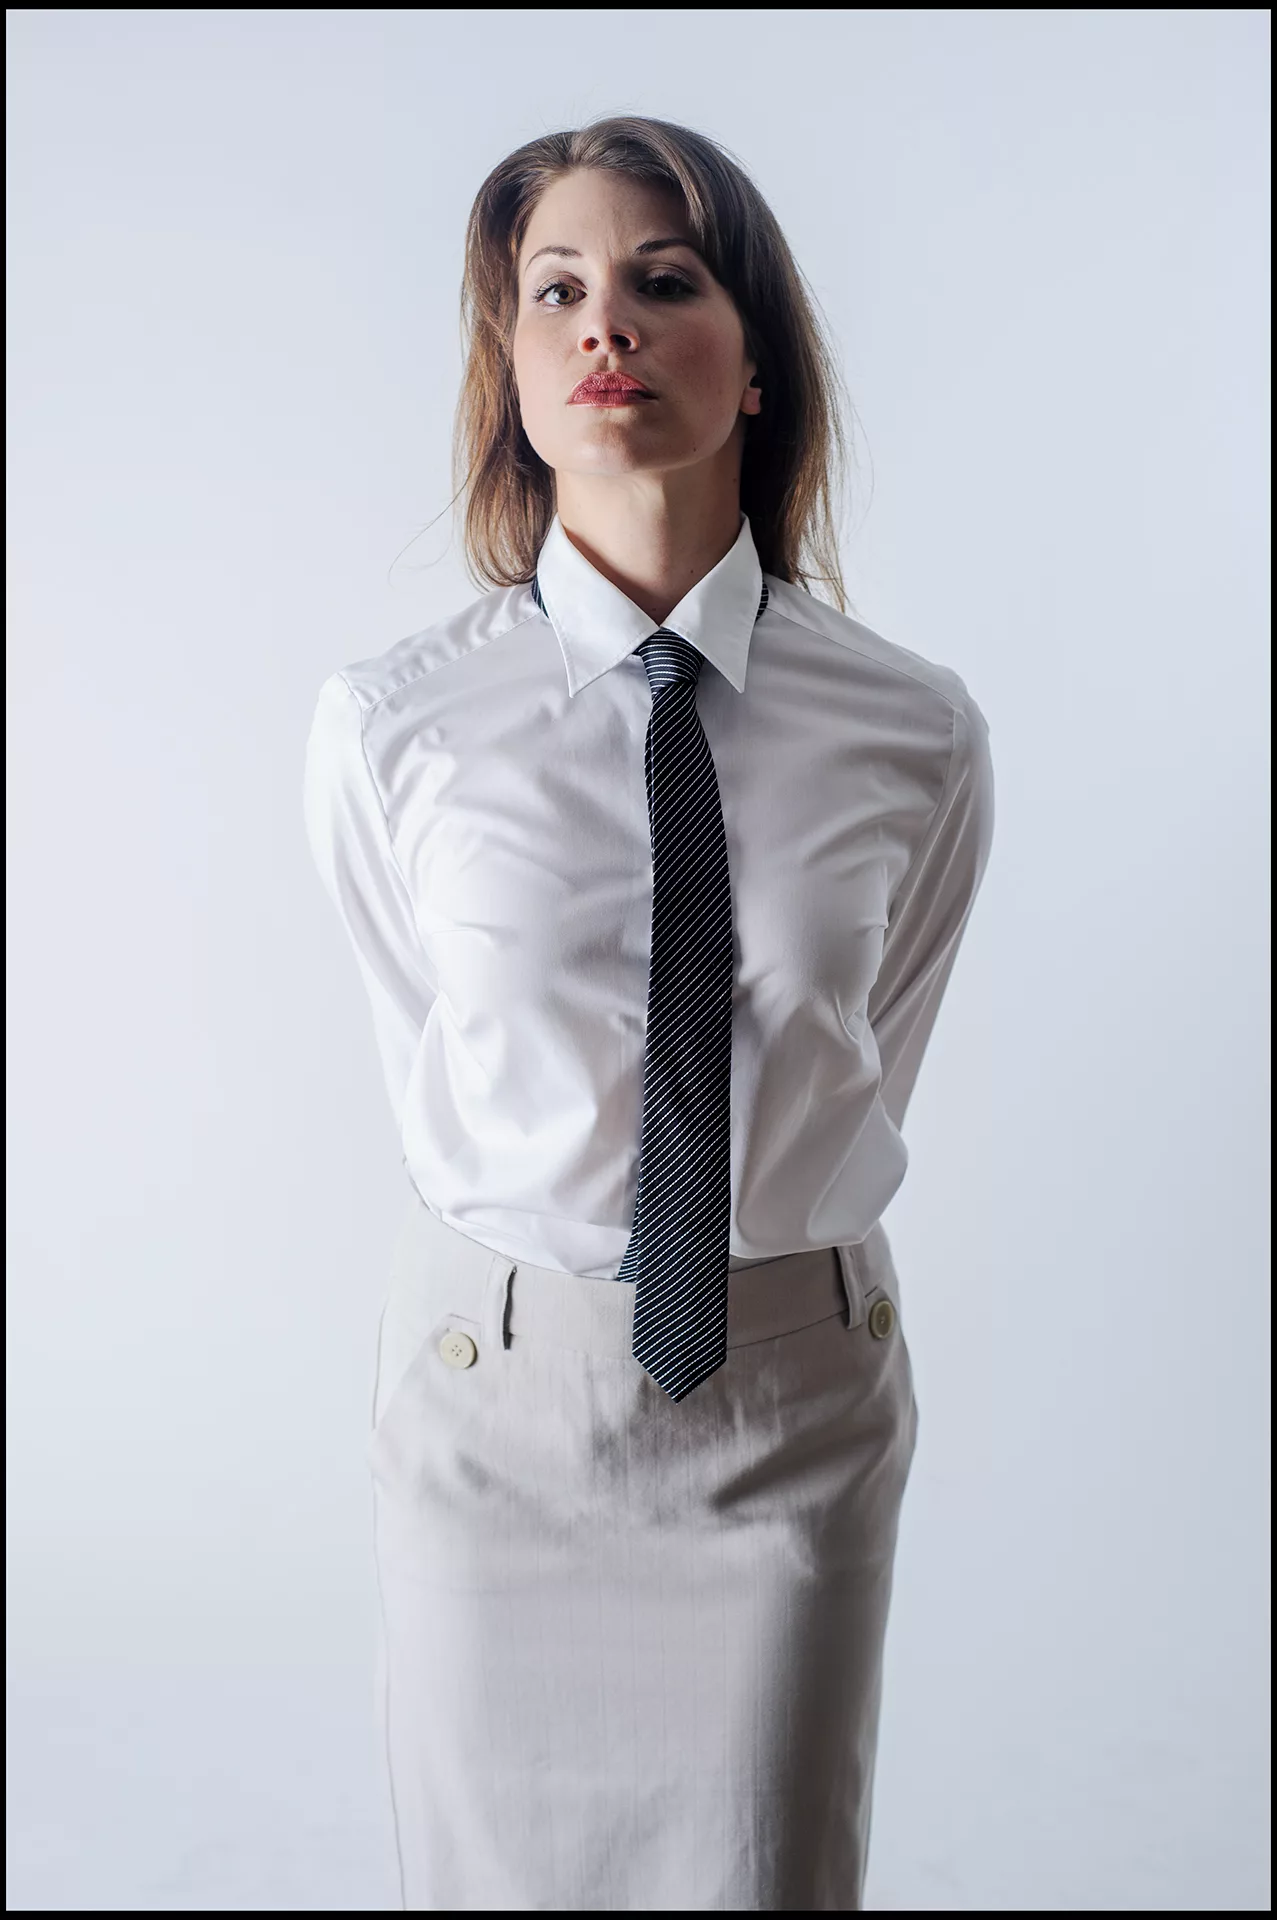 farbiges Foto Komparsin, weiße Bluse, schwarz gestreifte Krawatte